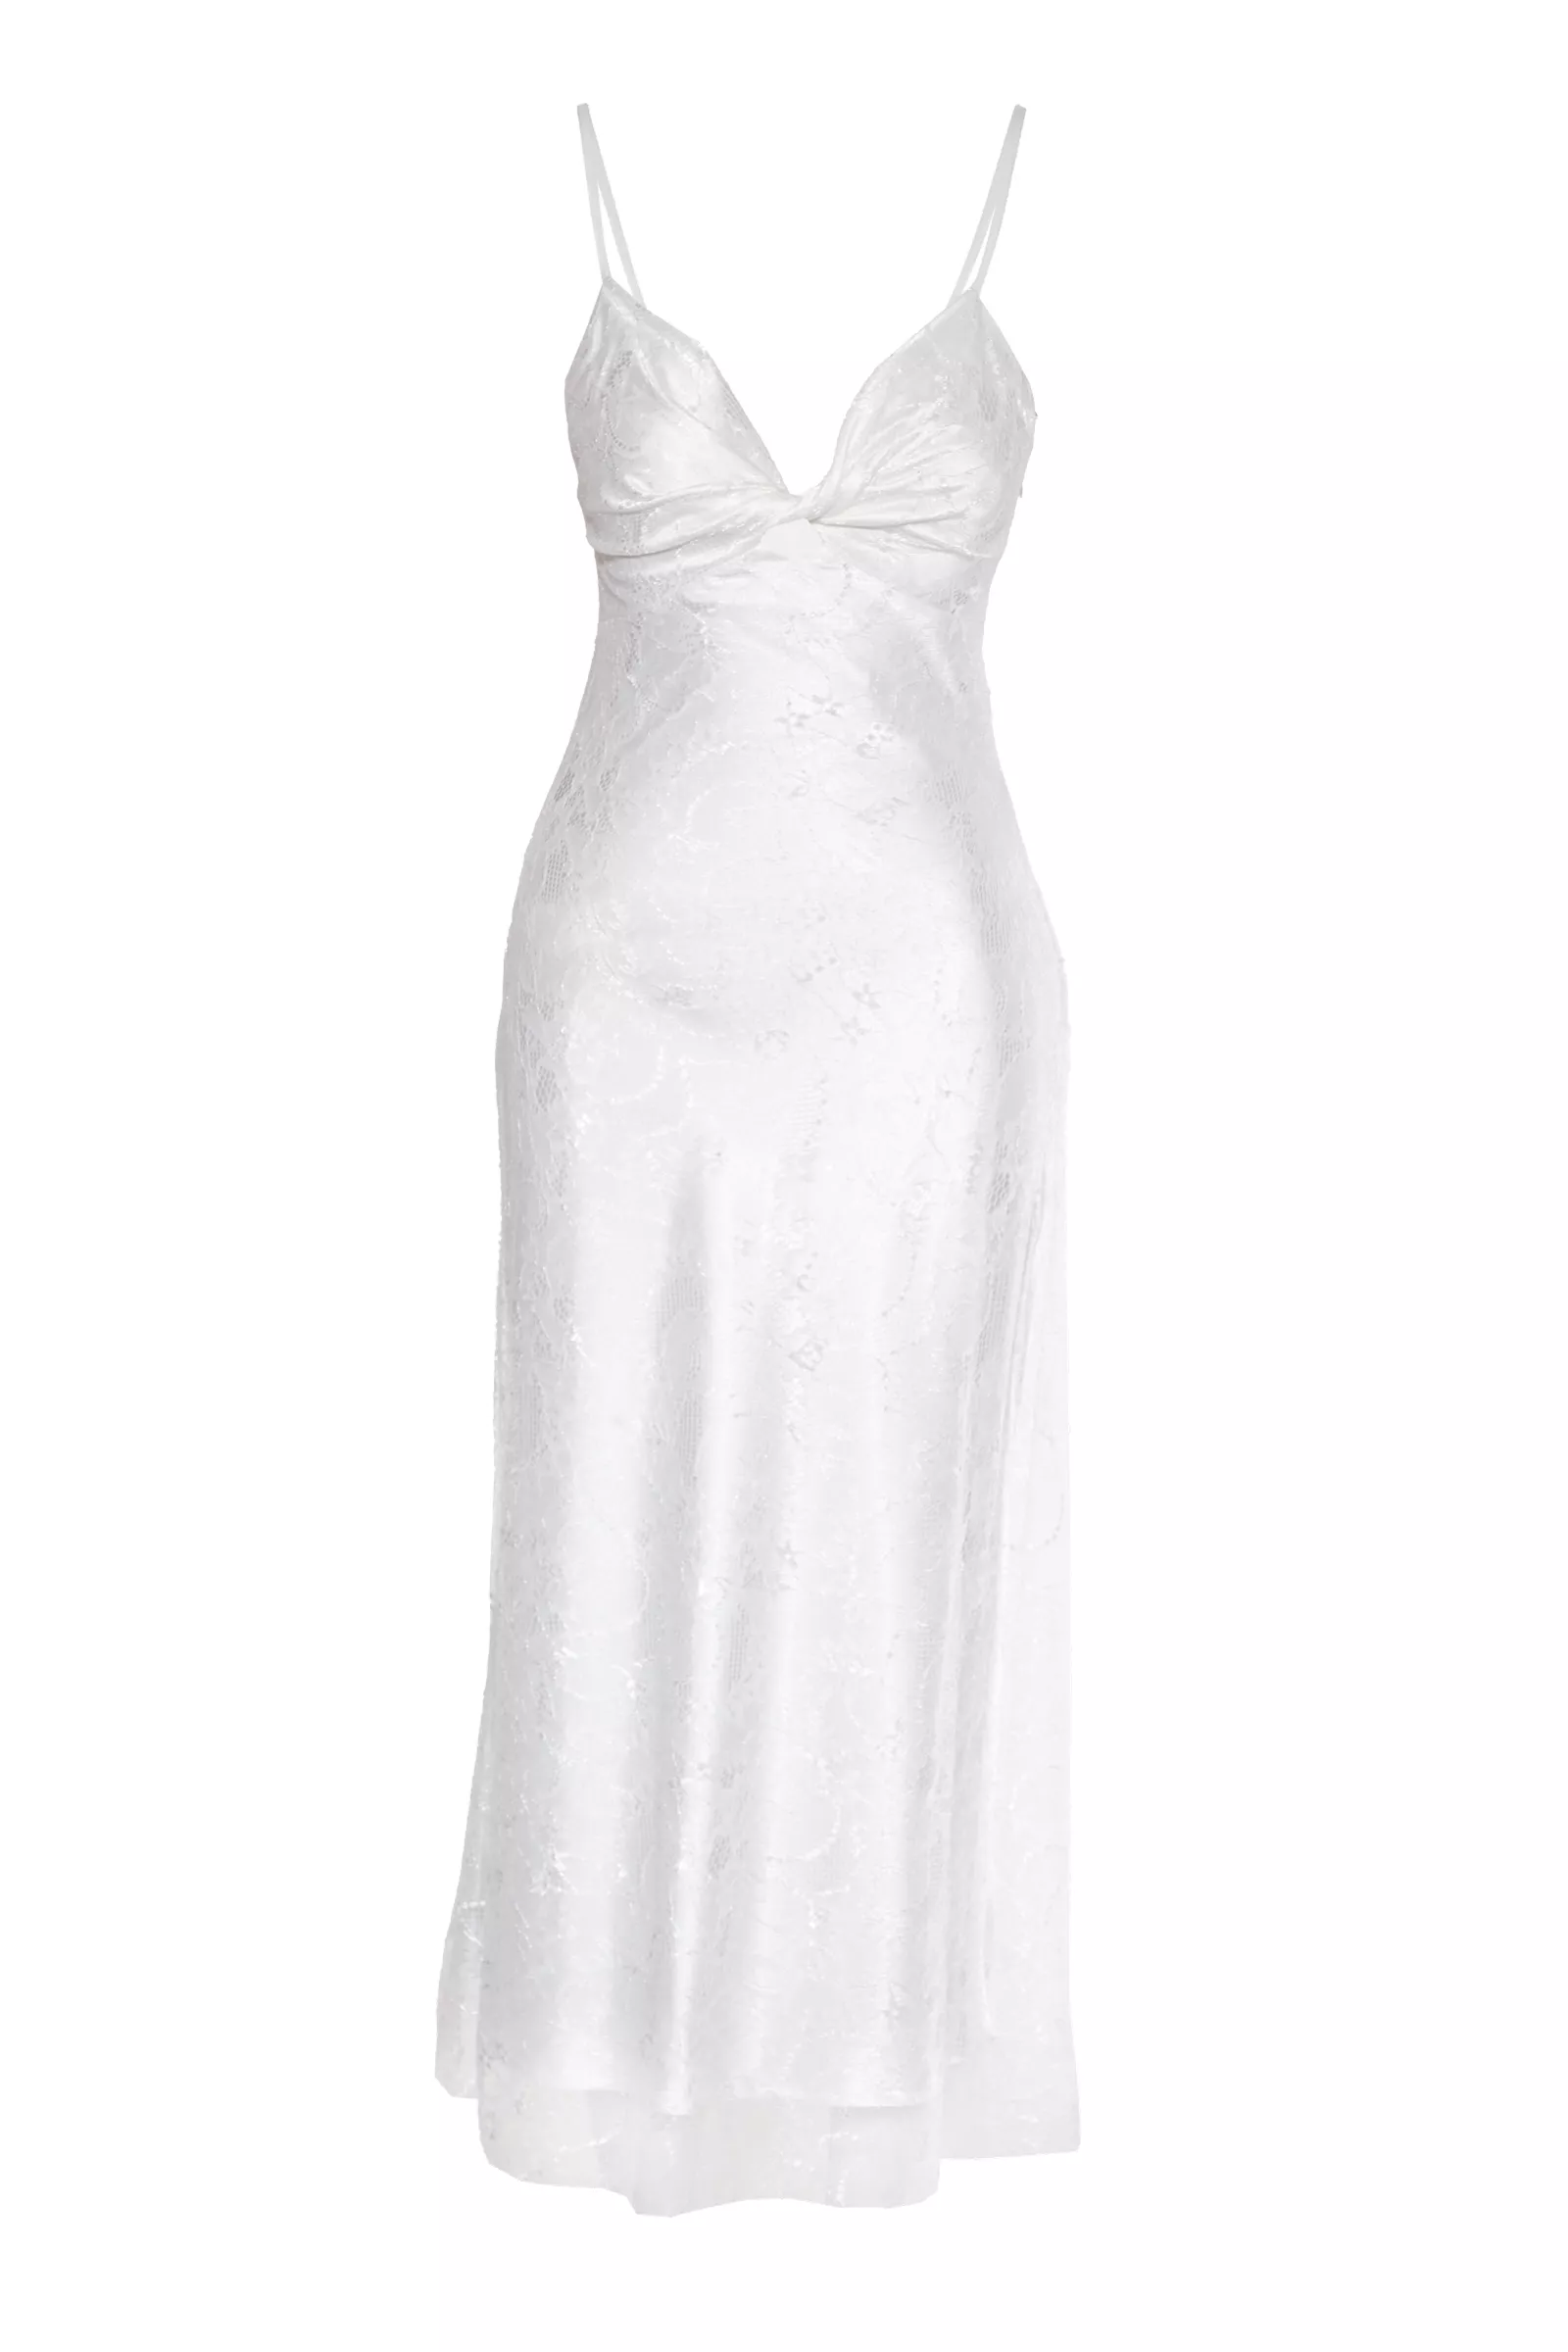 Beyaz dantel kolsuz orta boy elbise